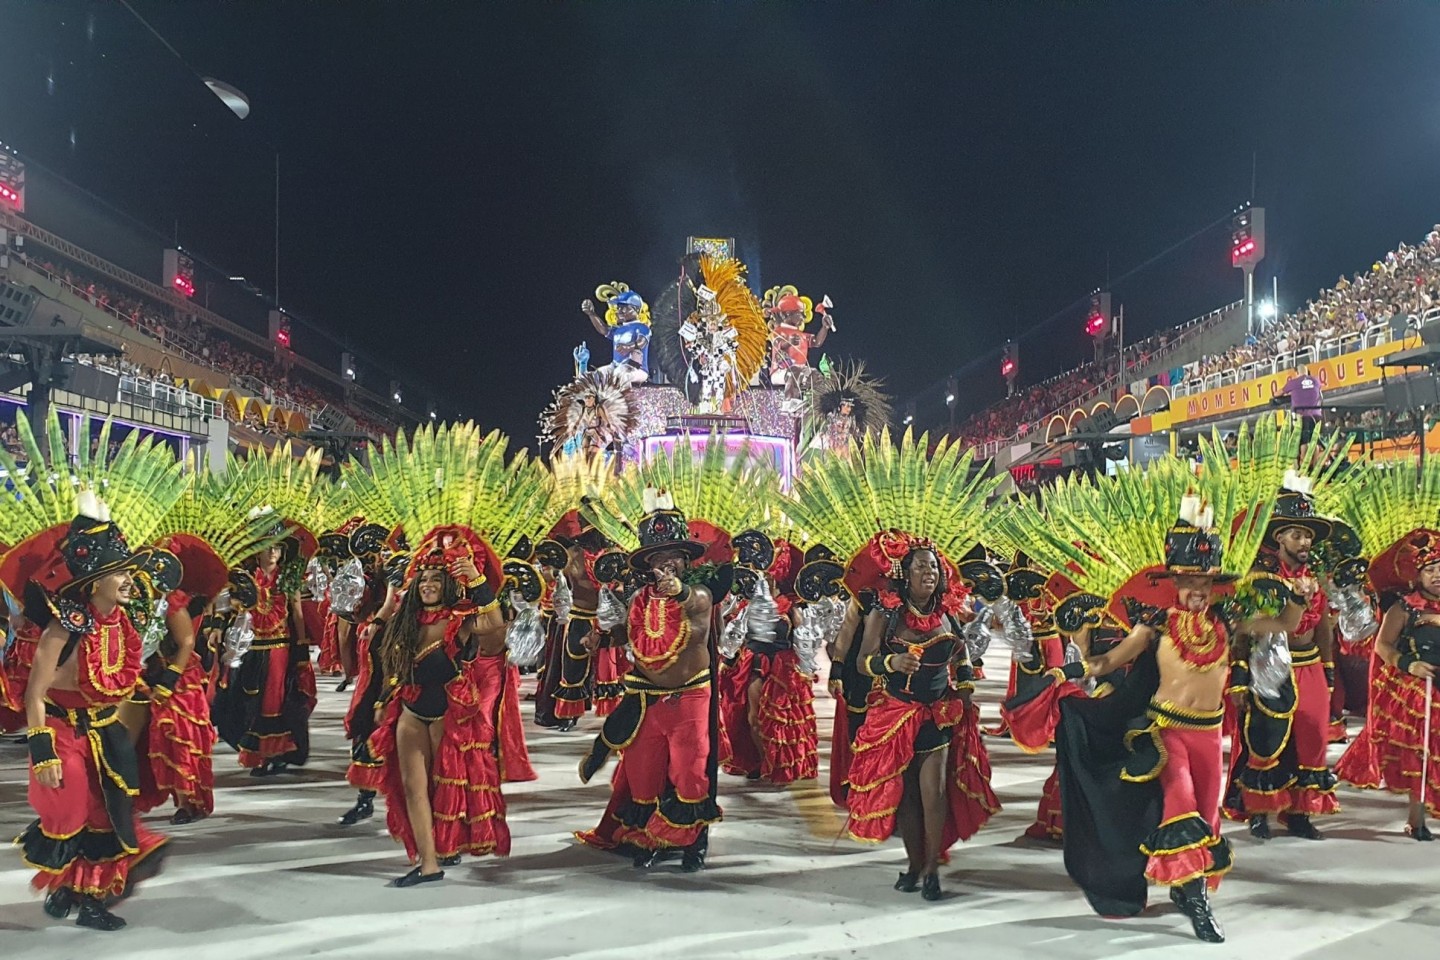 Der Karneval von Rio ist die größte Party der Welt, die Stadtverwaltung erwartet insgesamt sieben Millionen Menschen in der Stadt.